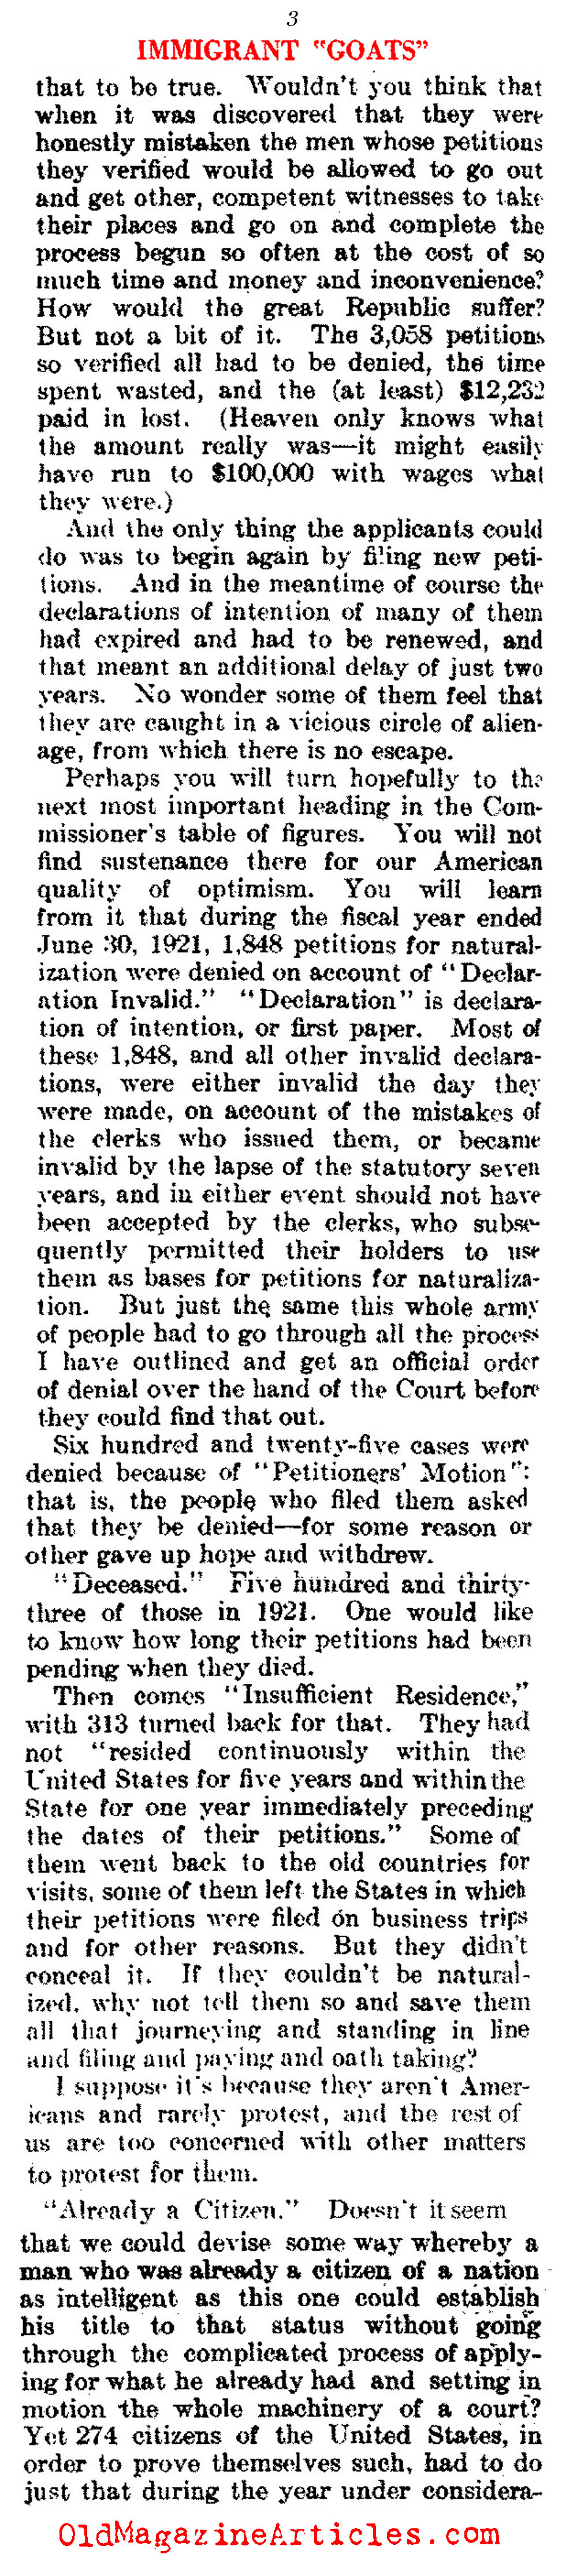 Citizenship Denied  (Literary Digest, 1922)